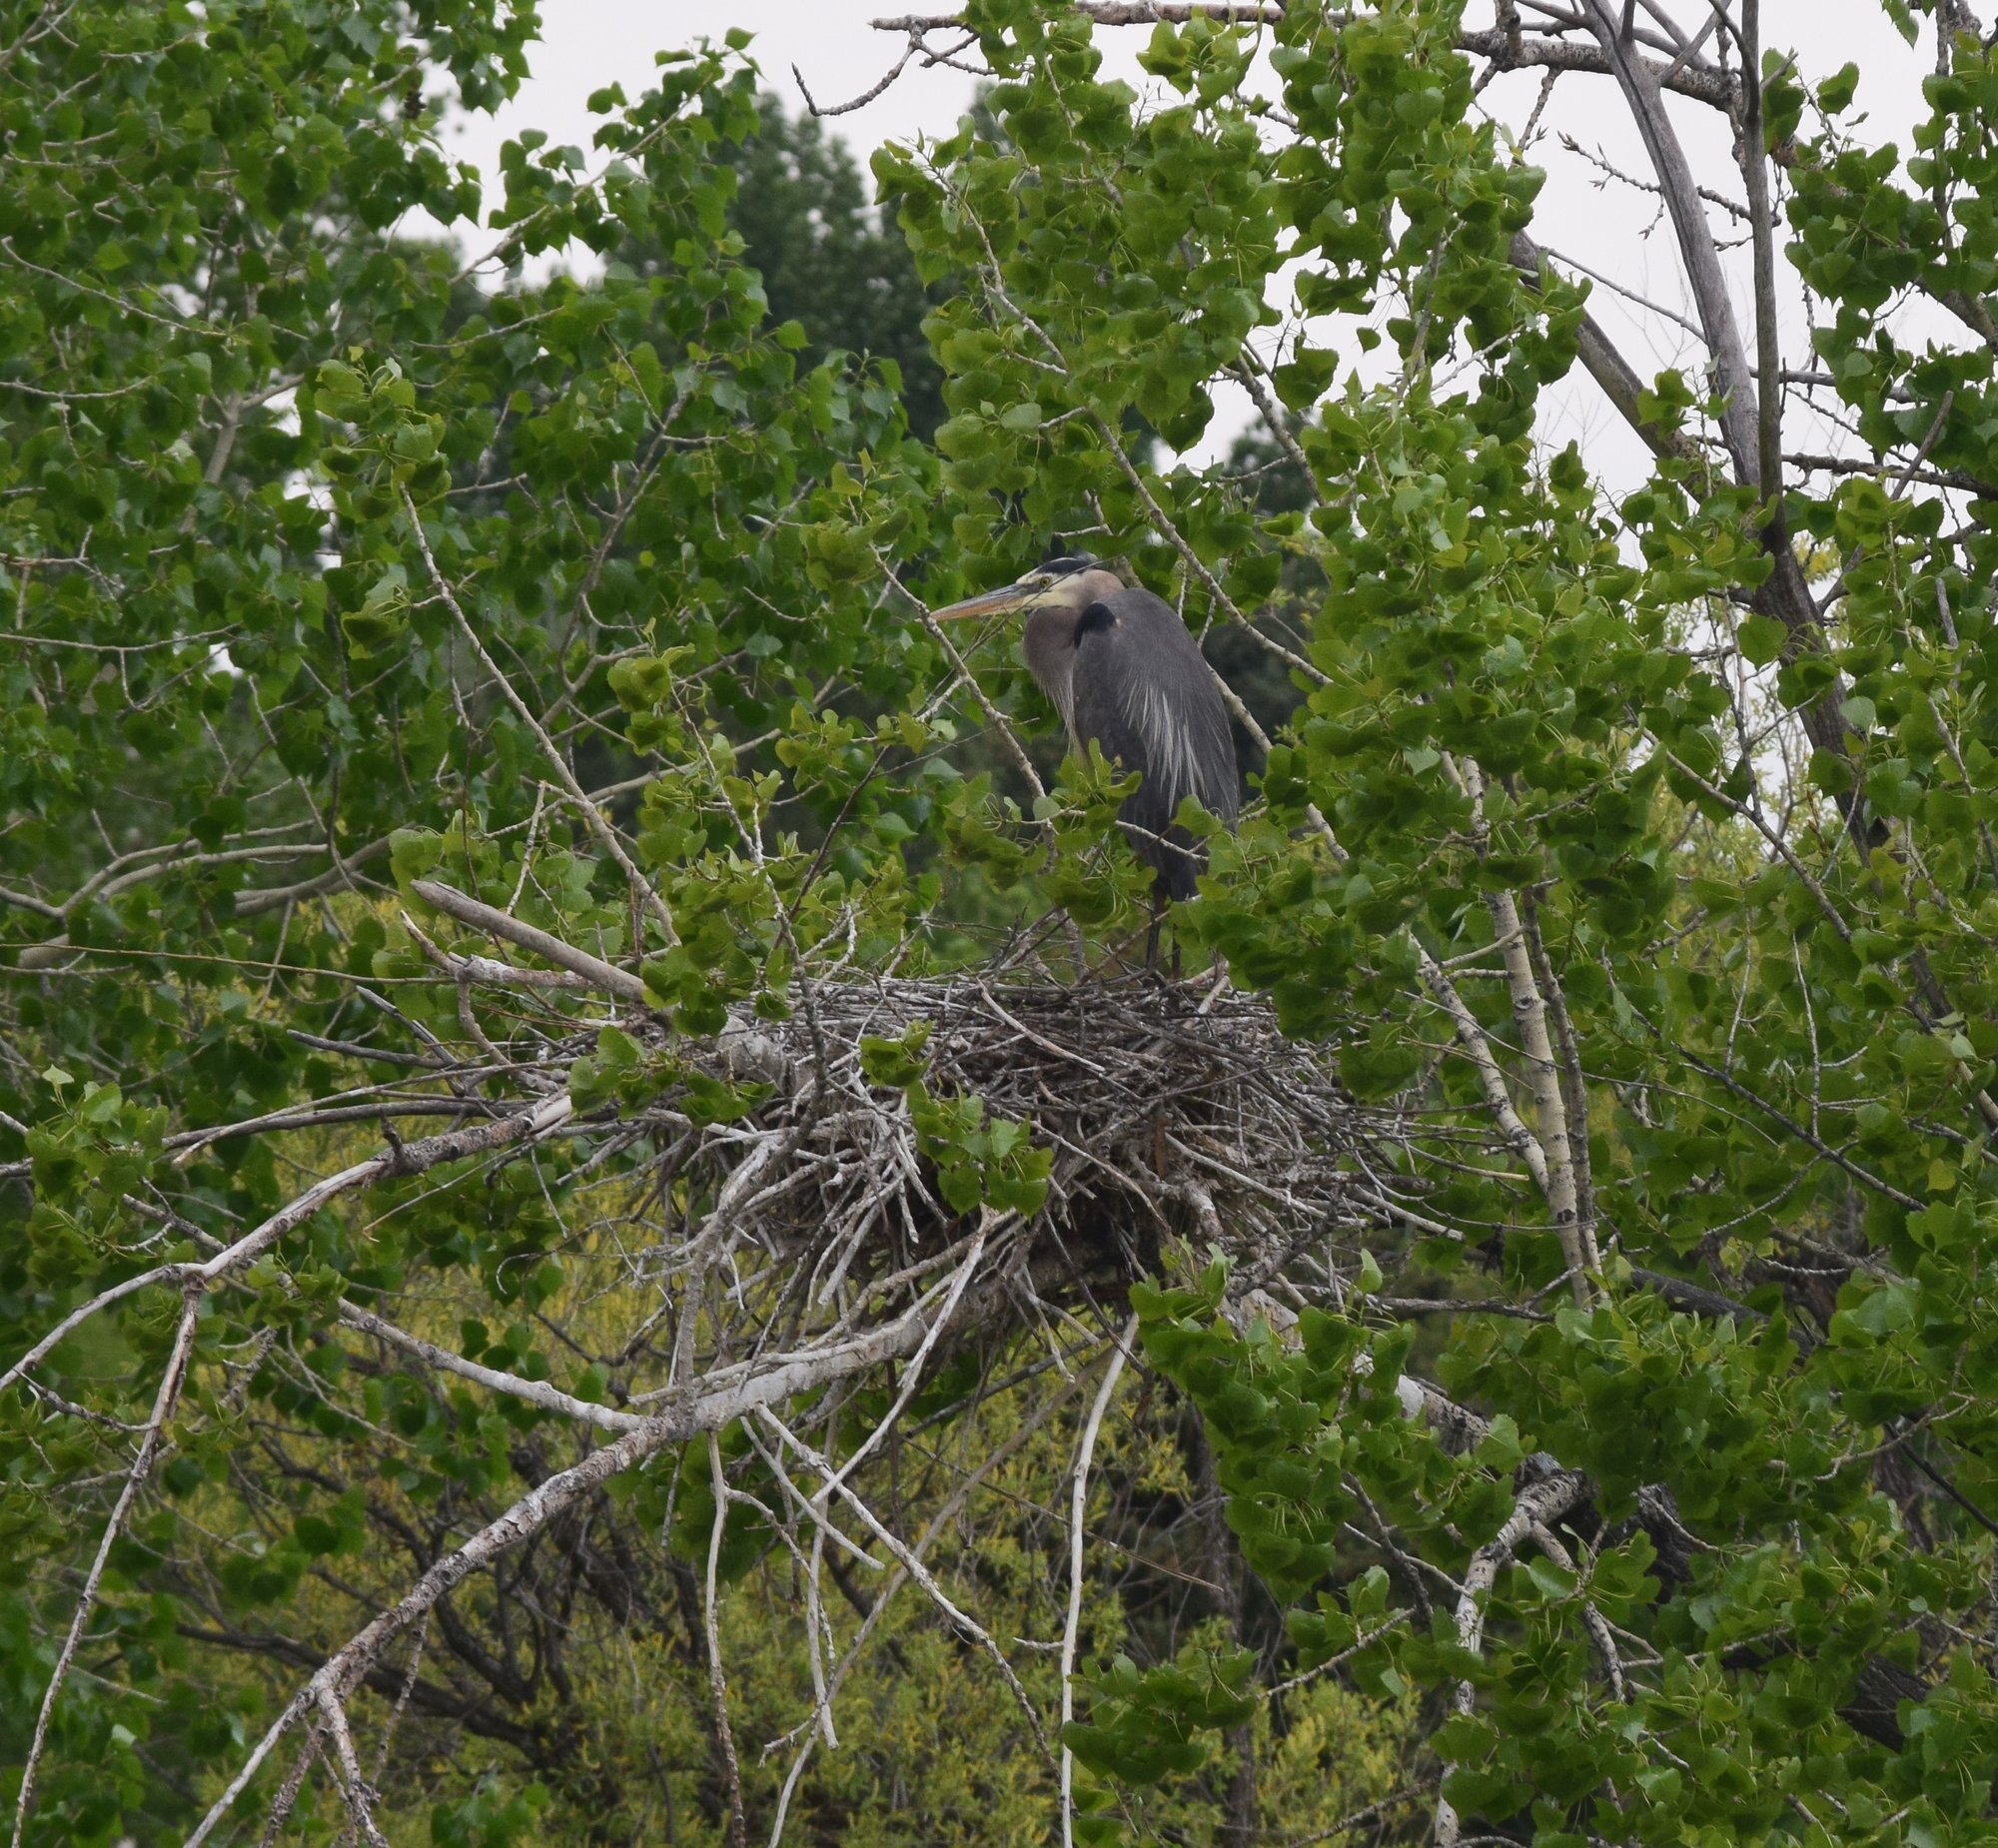 Nesting heron